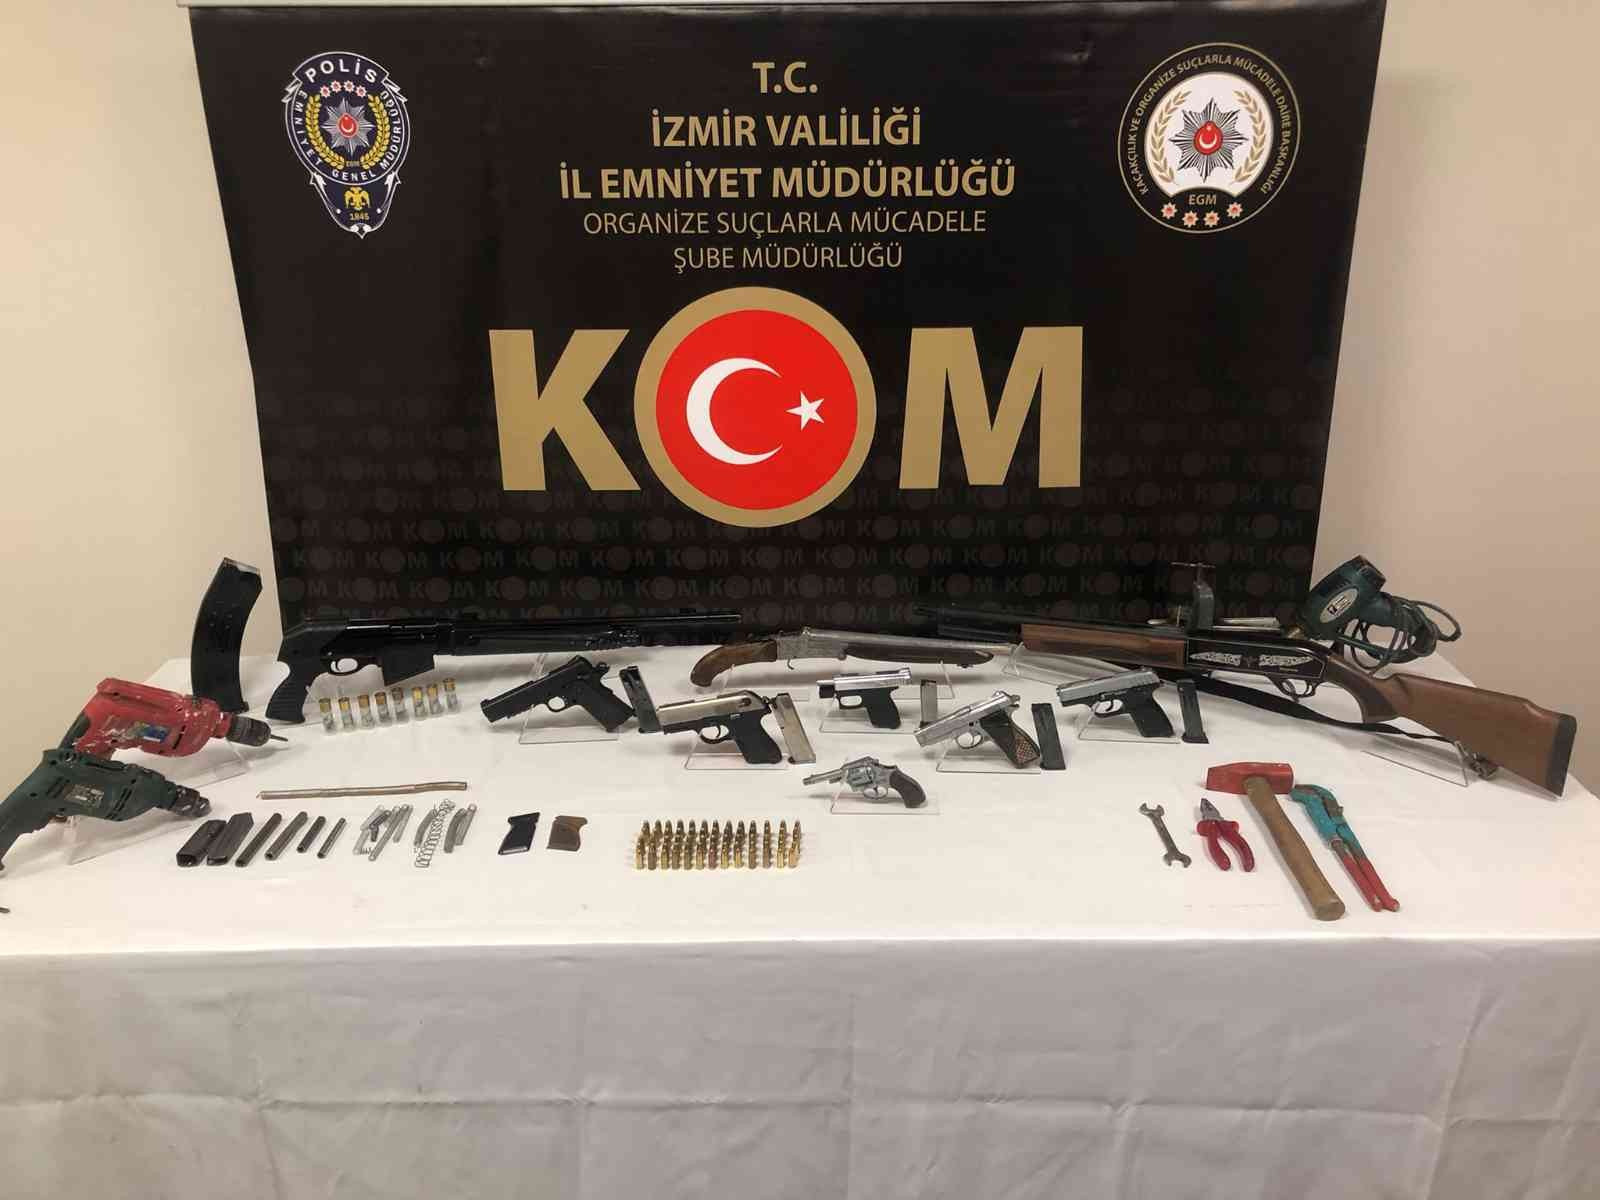 İzmir’de silah kaçakçılığı operasyonu: 4 gözaltı #izmir